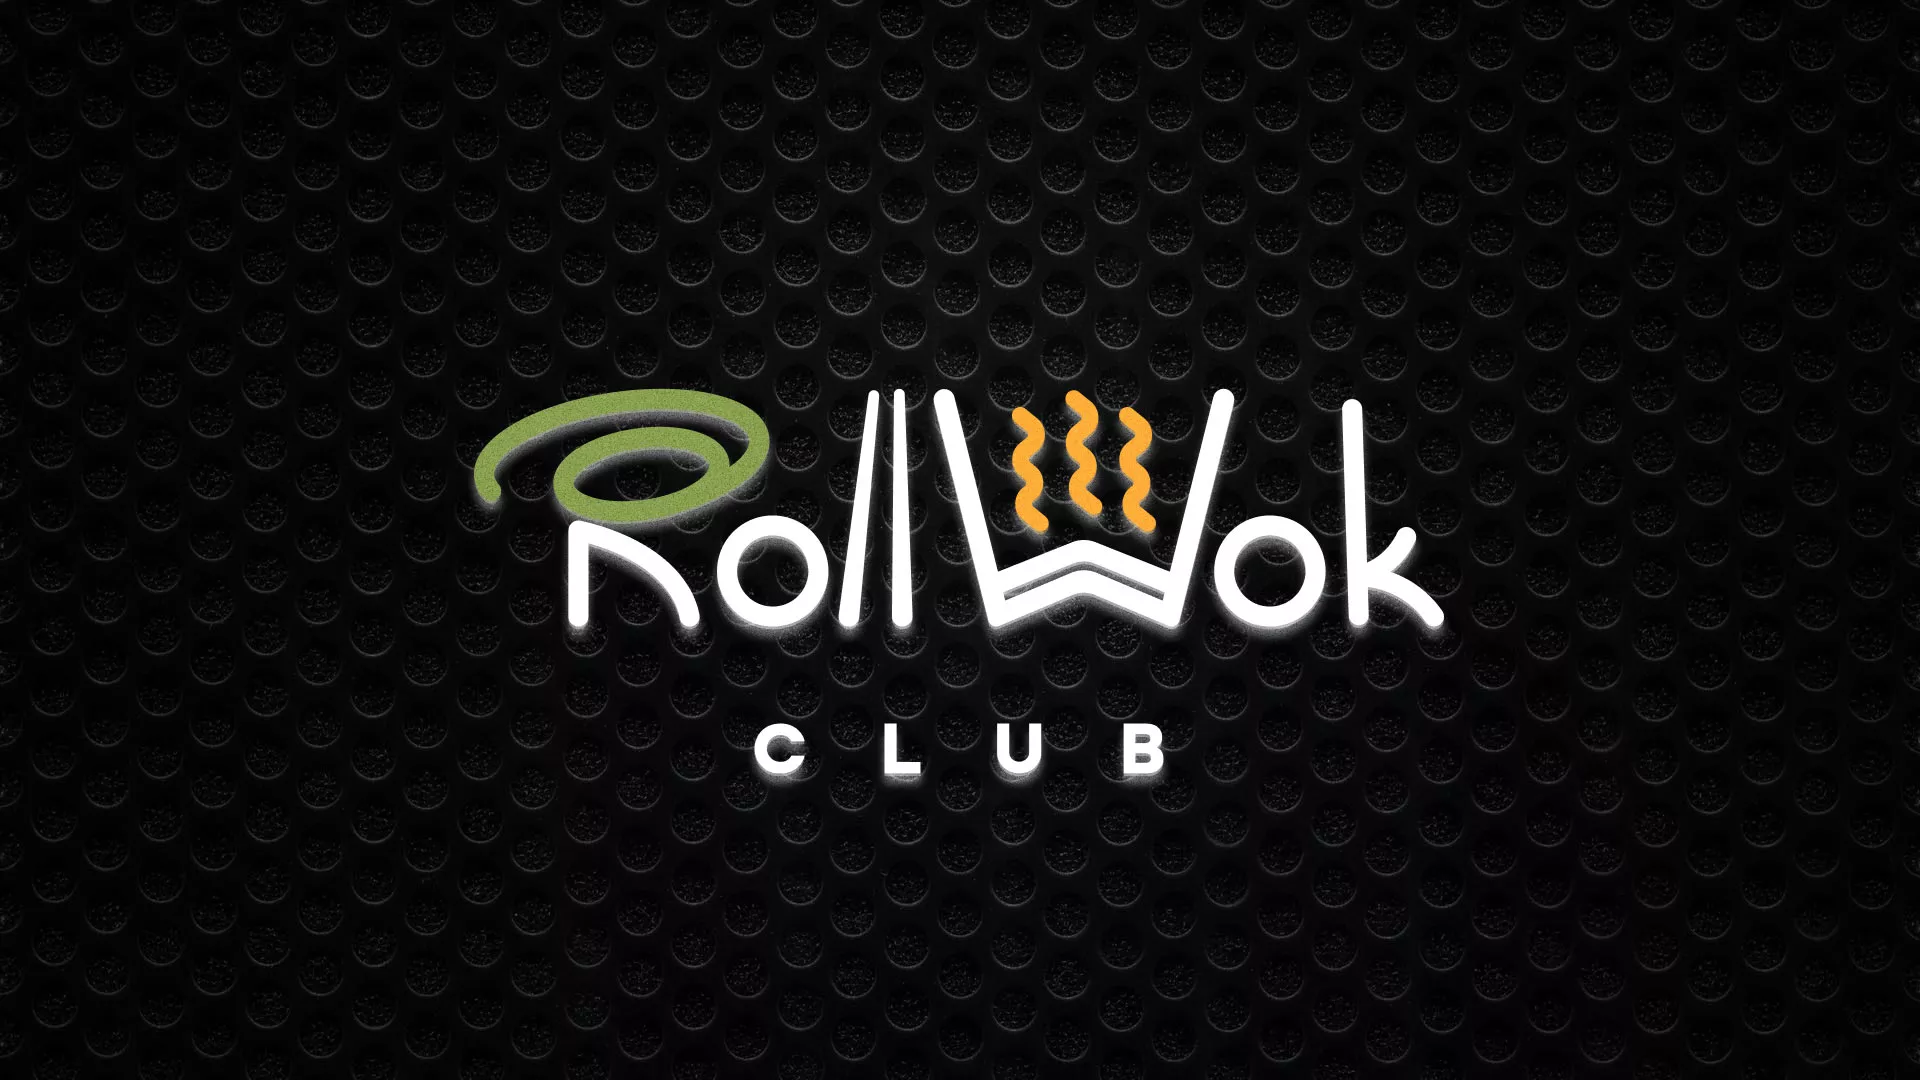 Брендирование торговых точек суши-бара «Roll Wok Club» в Новотроицке